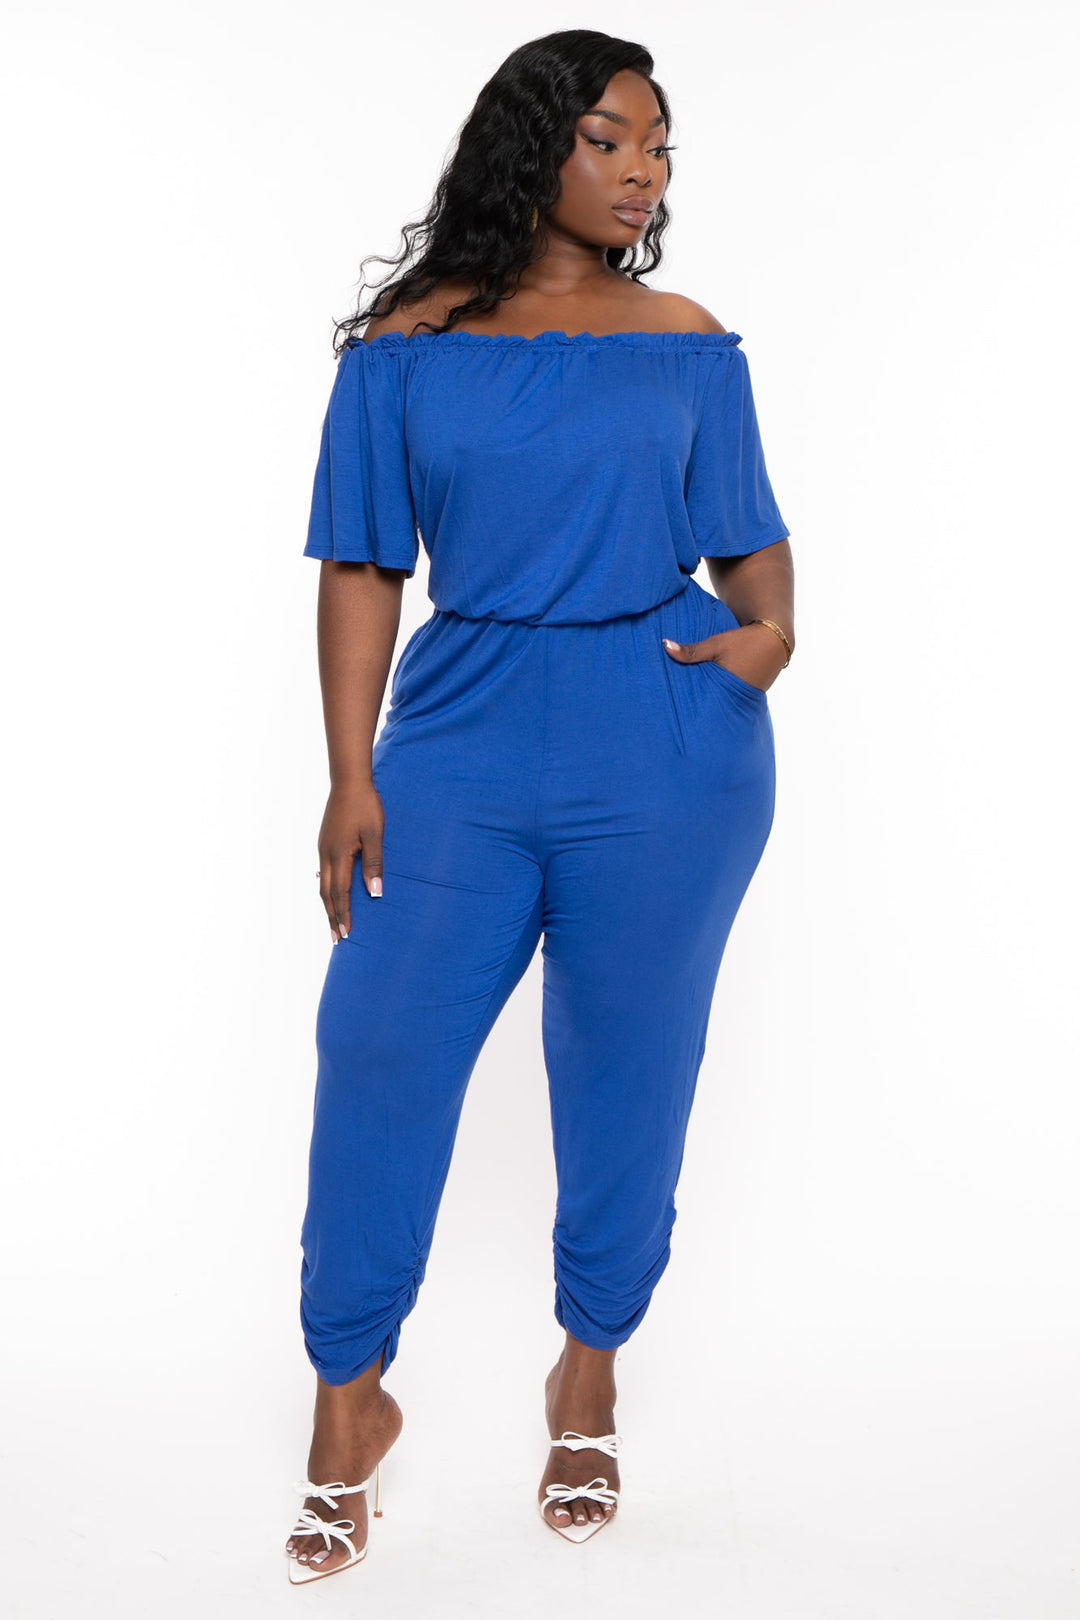 Blue Plus-Size Jumpsuits & Rompers